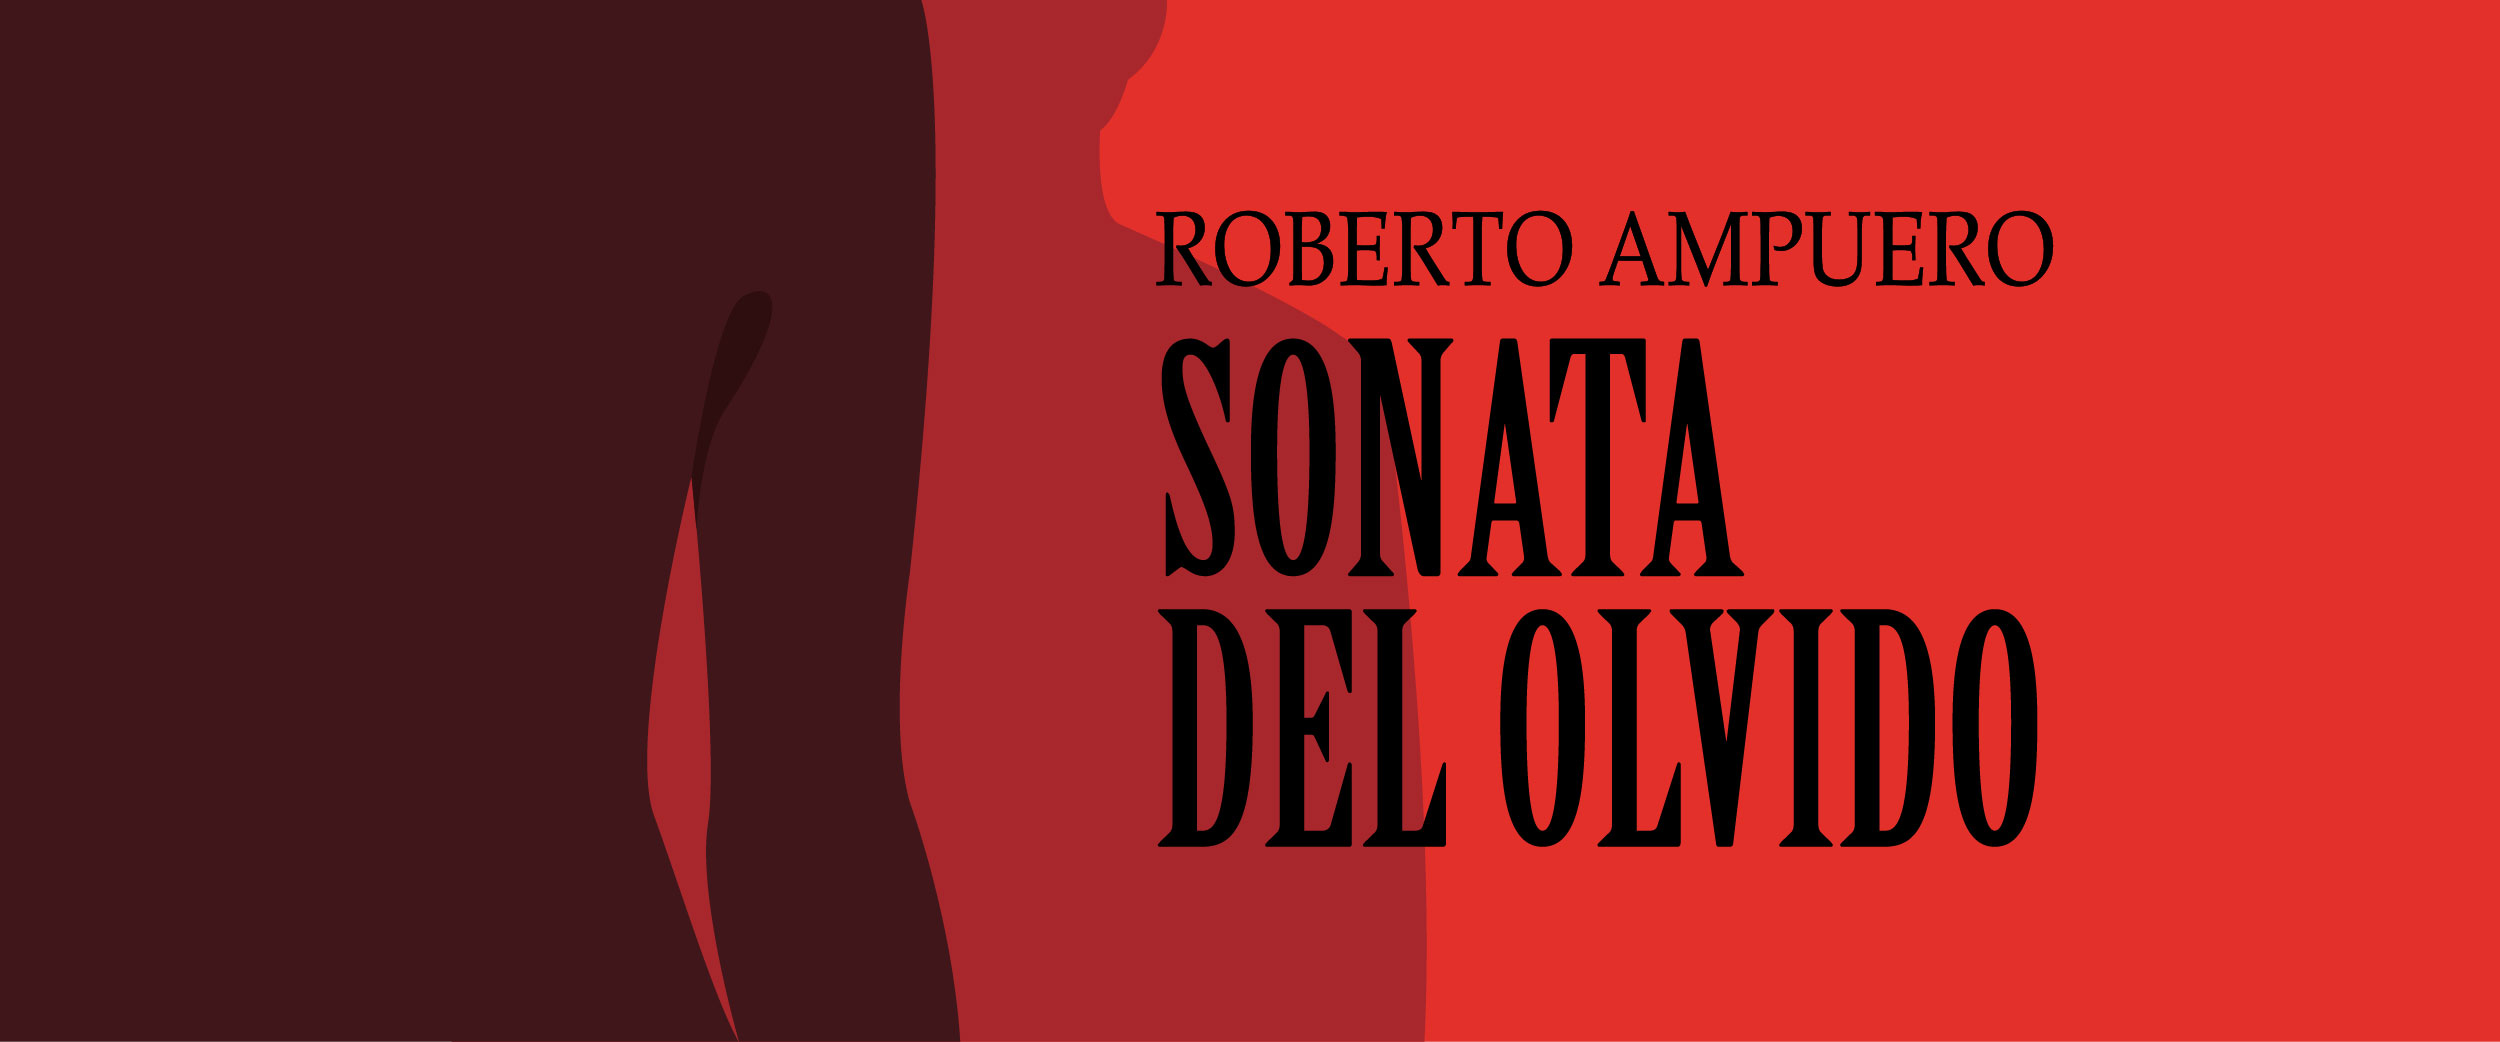 Conversando con Roberto Ampuero: "Sonata del olvido"